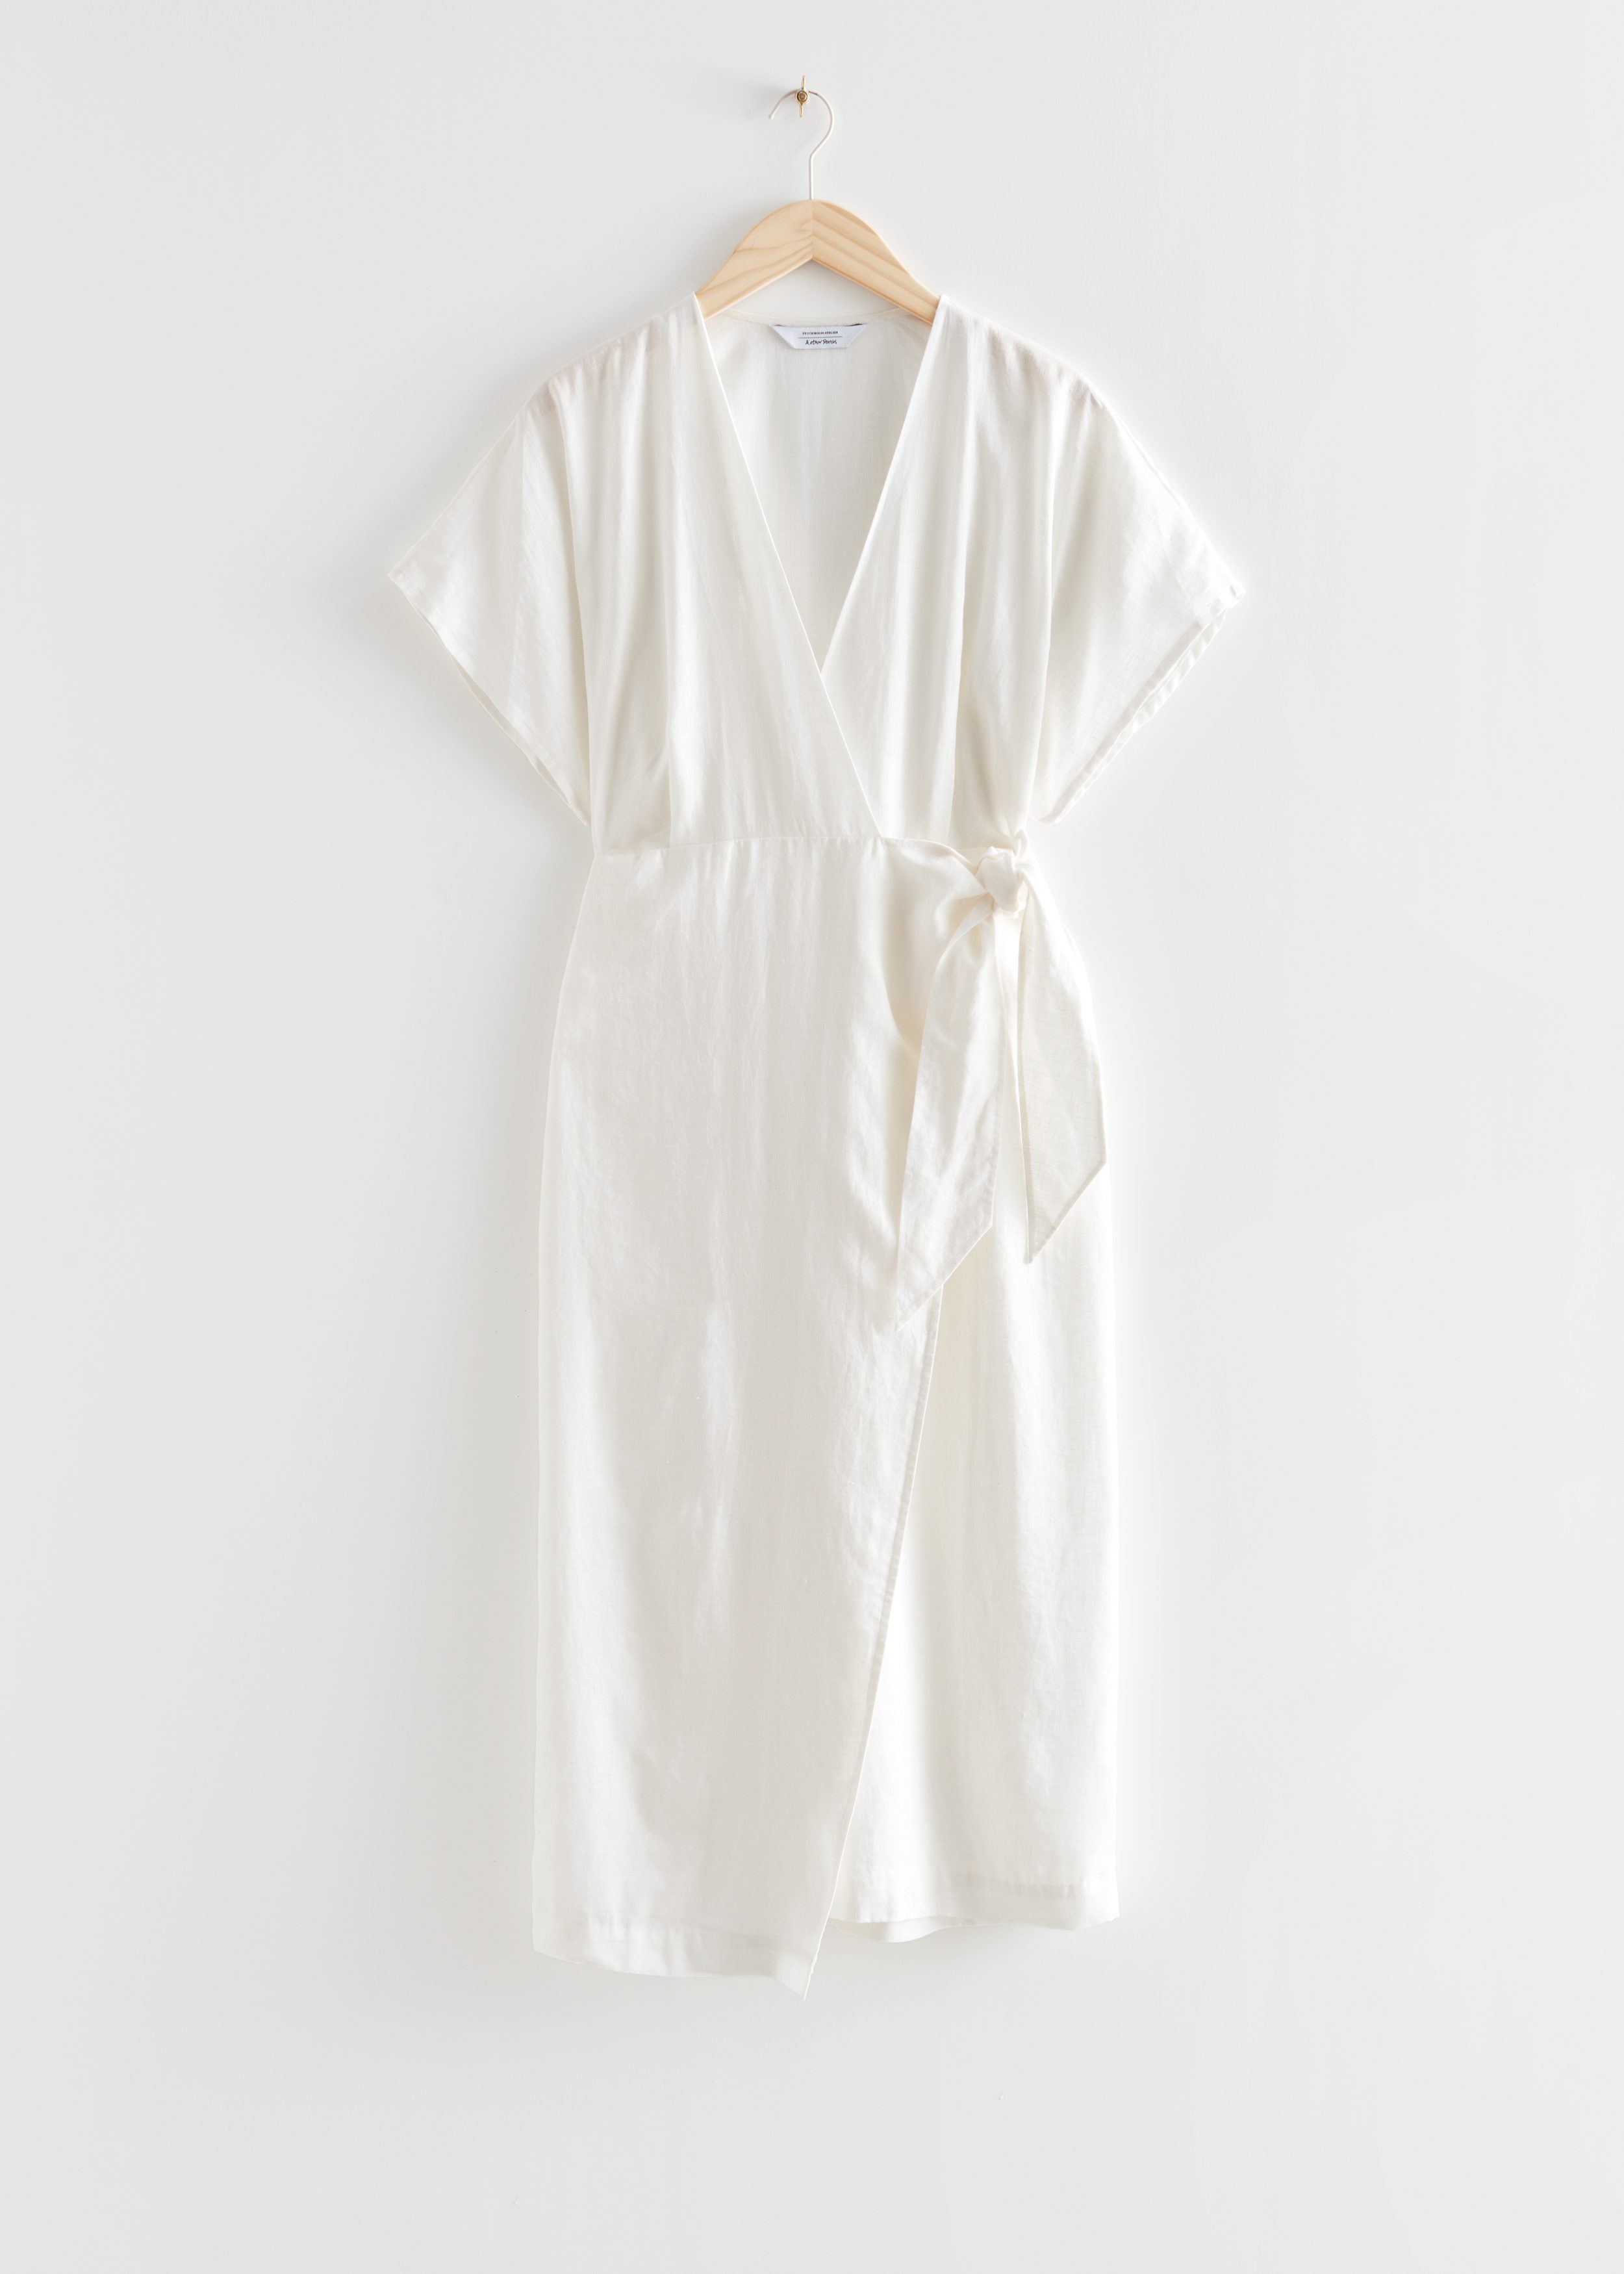 Billede af & Other Stories Slå Om-kjole I Hør Hvid, Hverdagskjoler. Farve: White størrelse 32